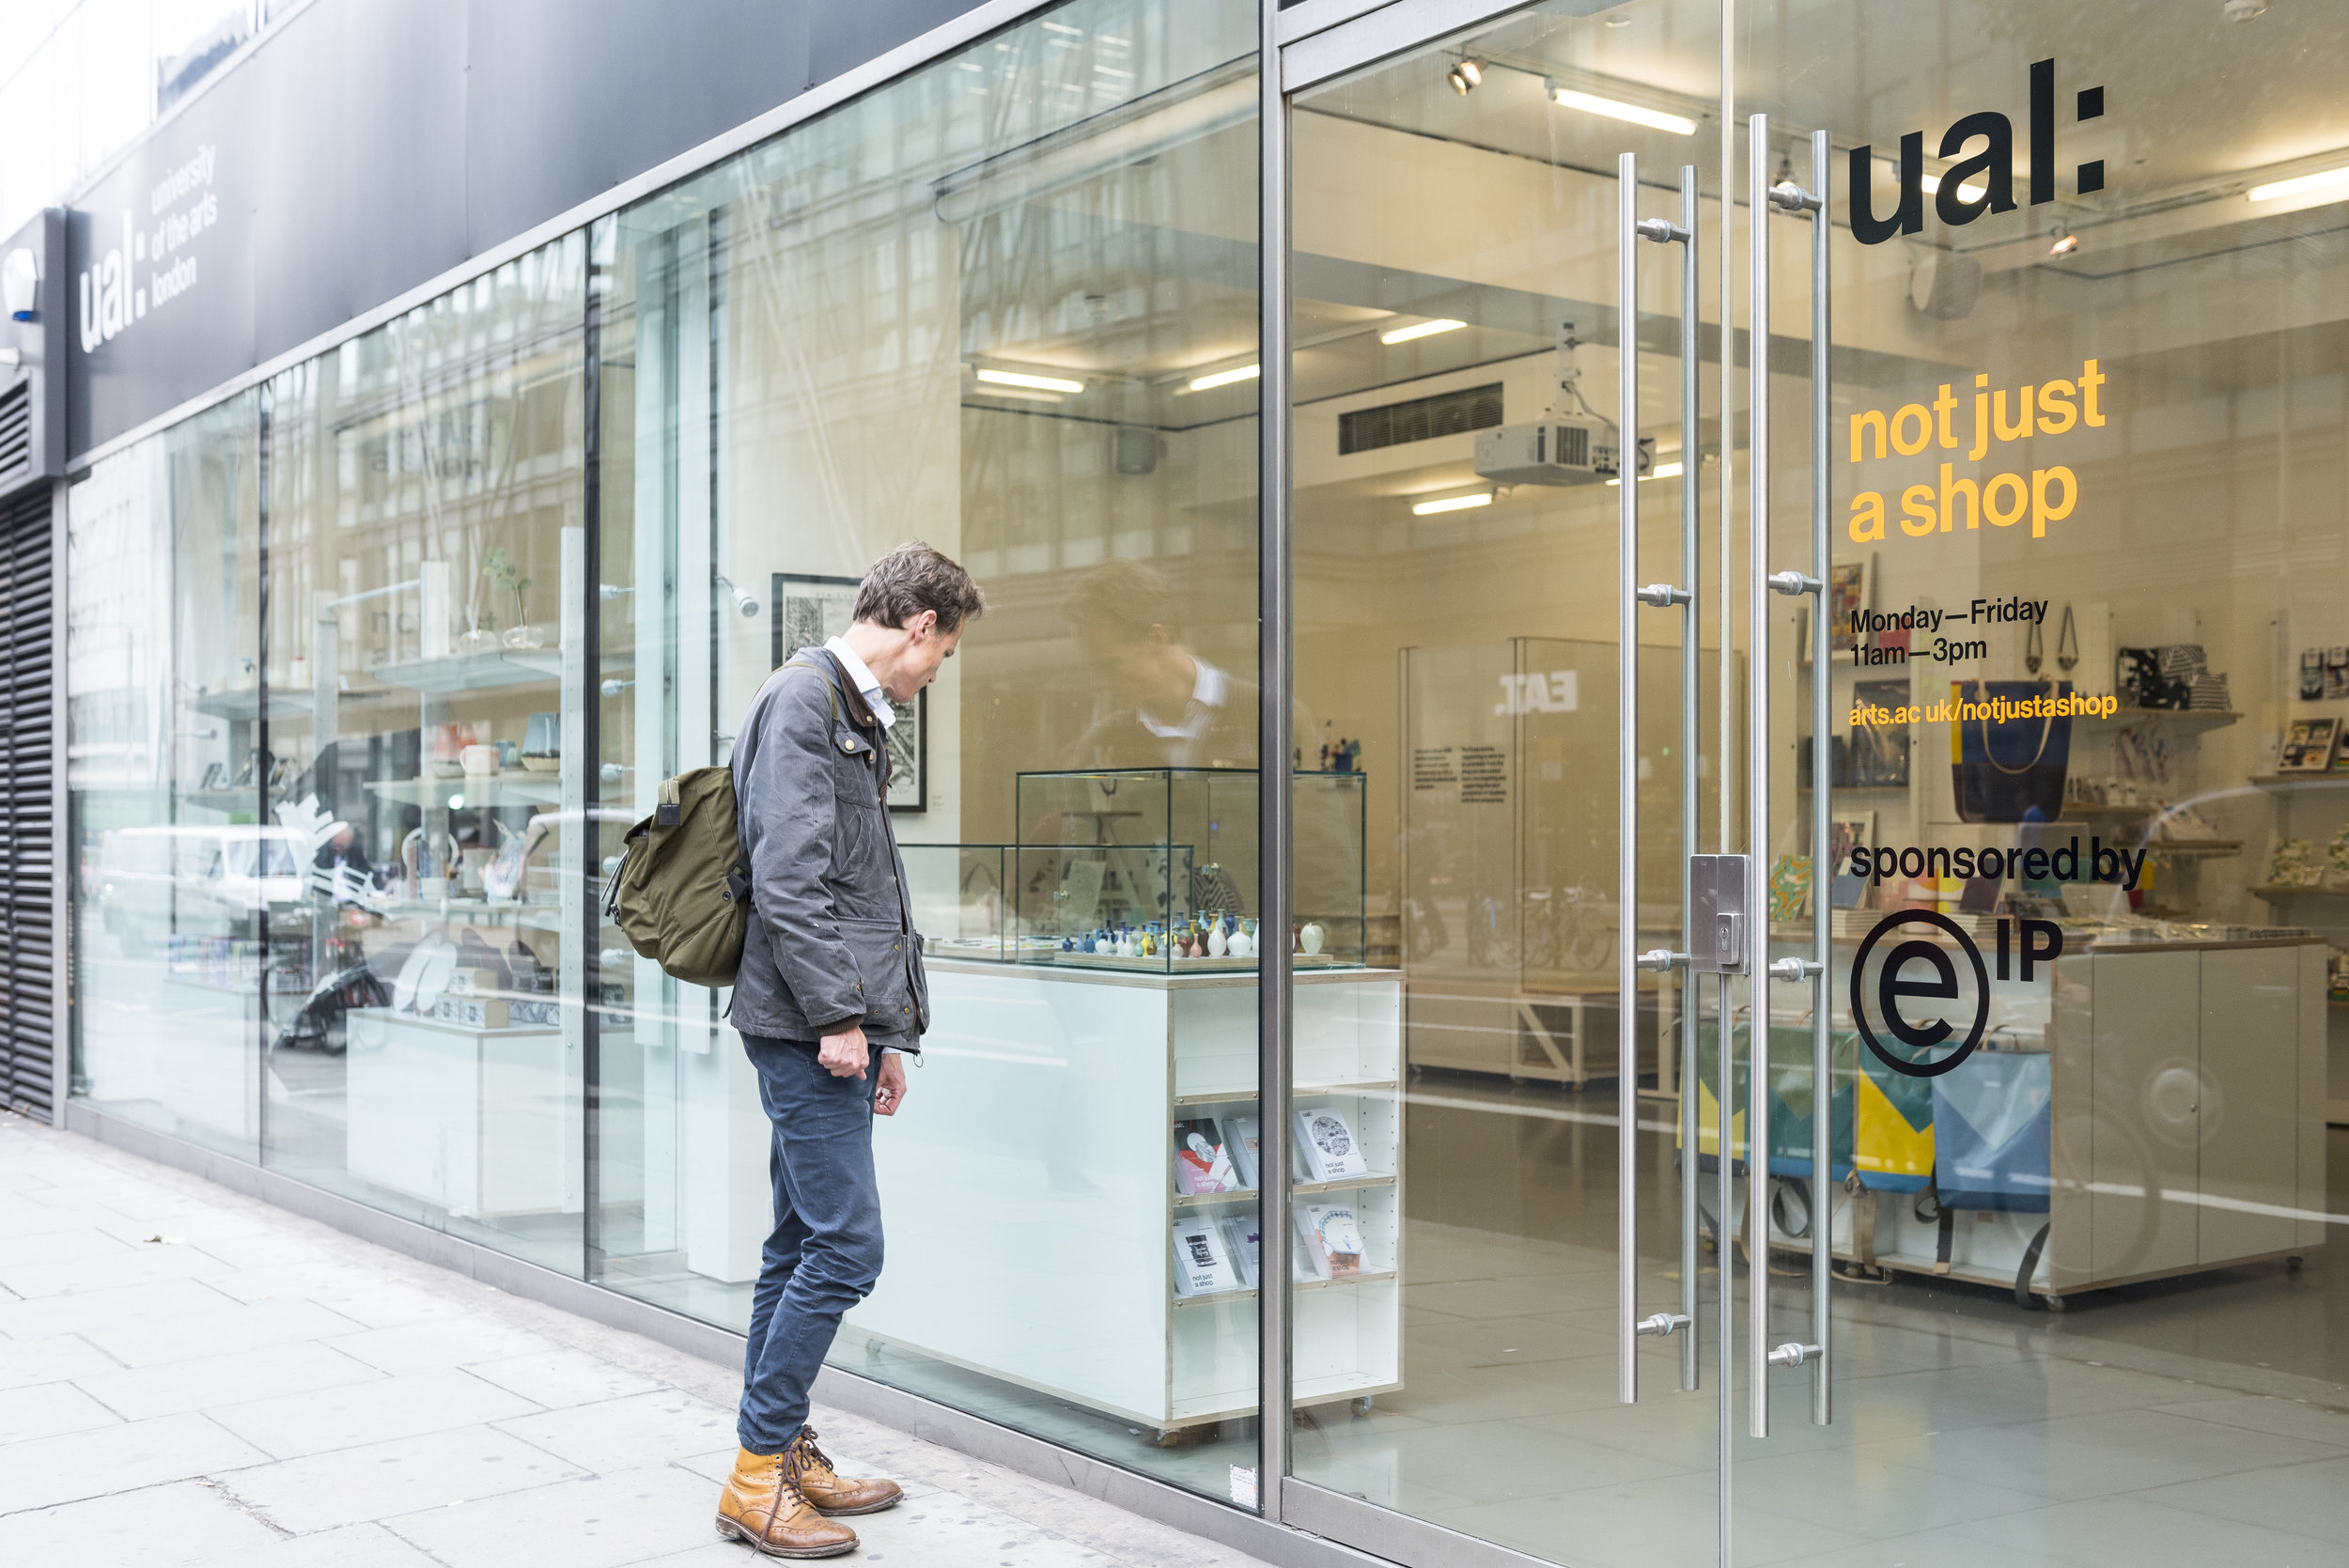 Why not shop. Just магазин. Not just магазин. UAL университет в Лондоне. UAL University of the Arts London.